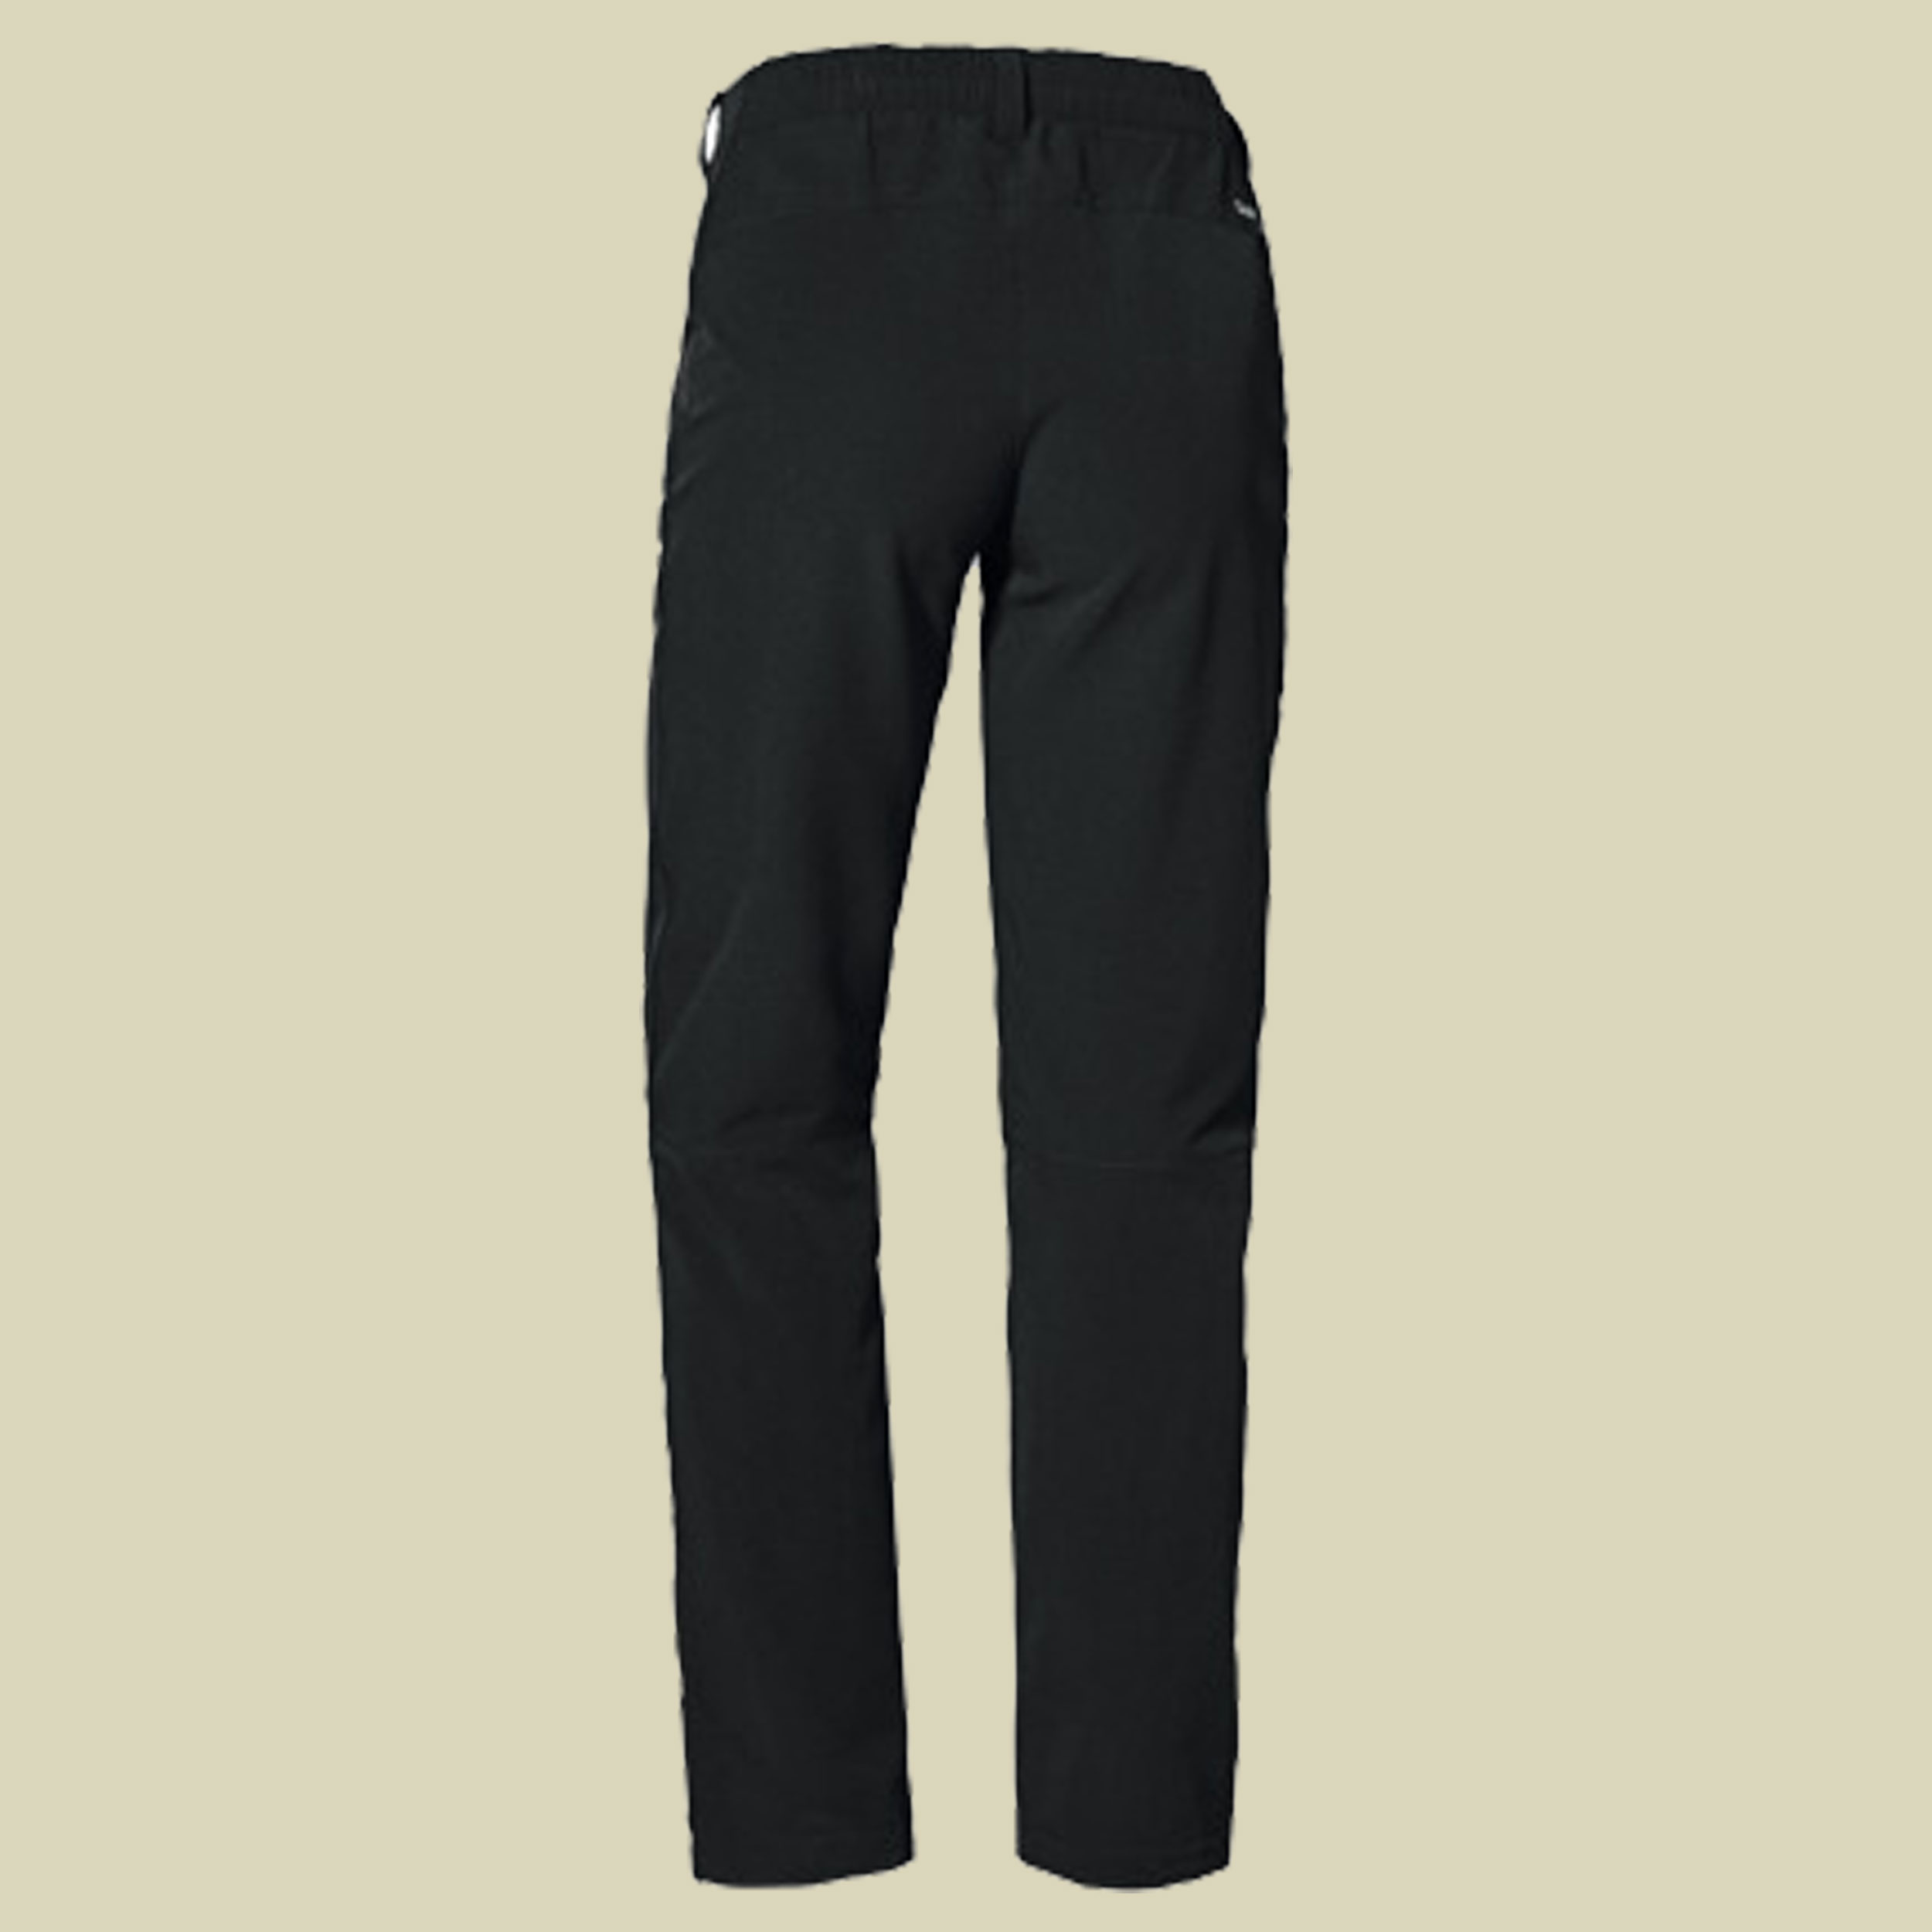 Pants Ascona Warm L Women Größe 19 Farbe black